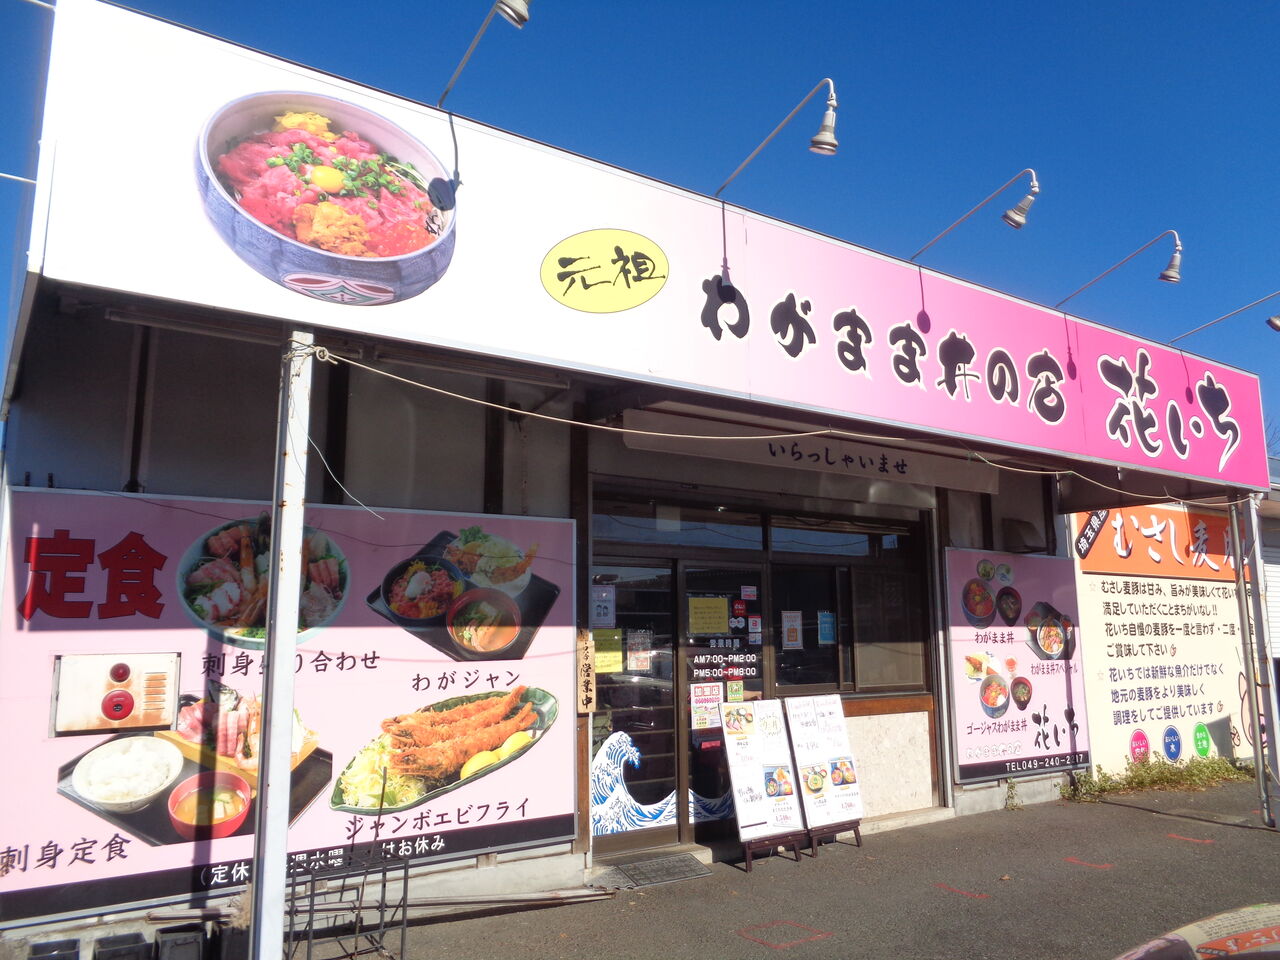 川越市 わがまま丼の店 花いち まんまるblogの食べて遊んでパワーアップ